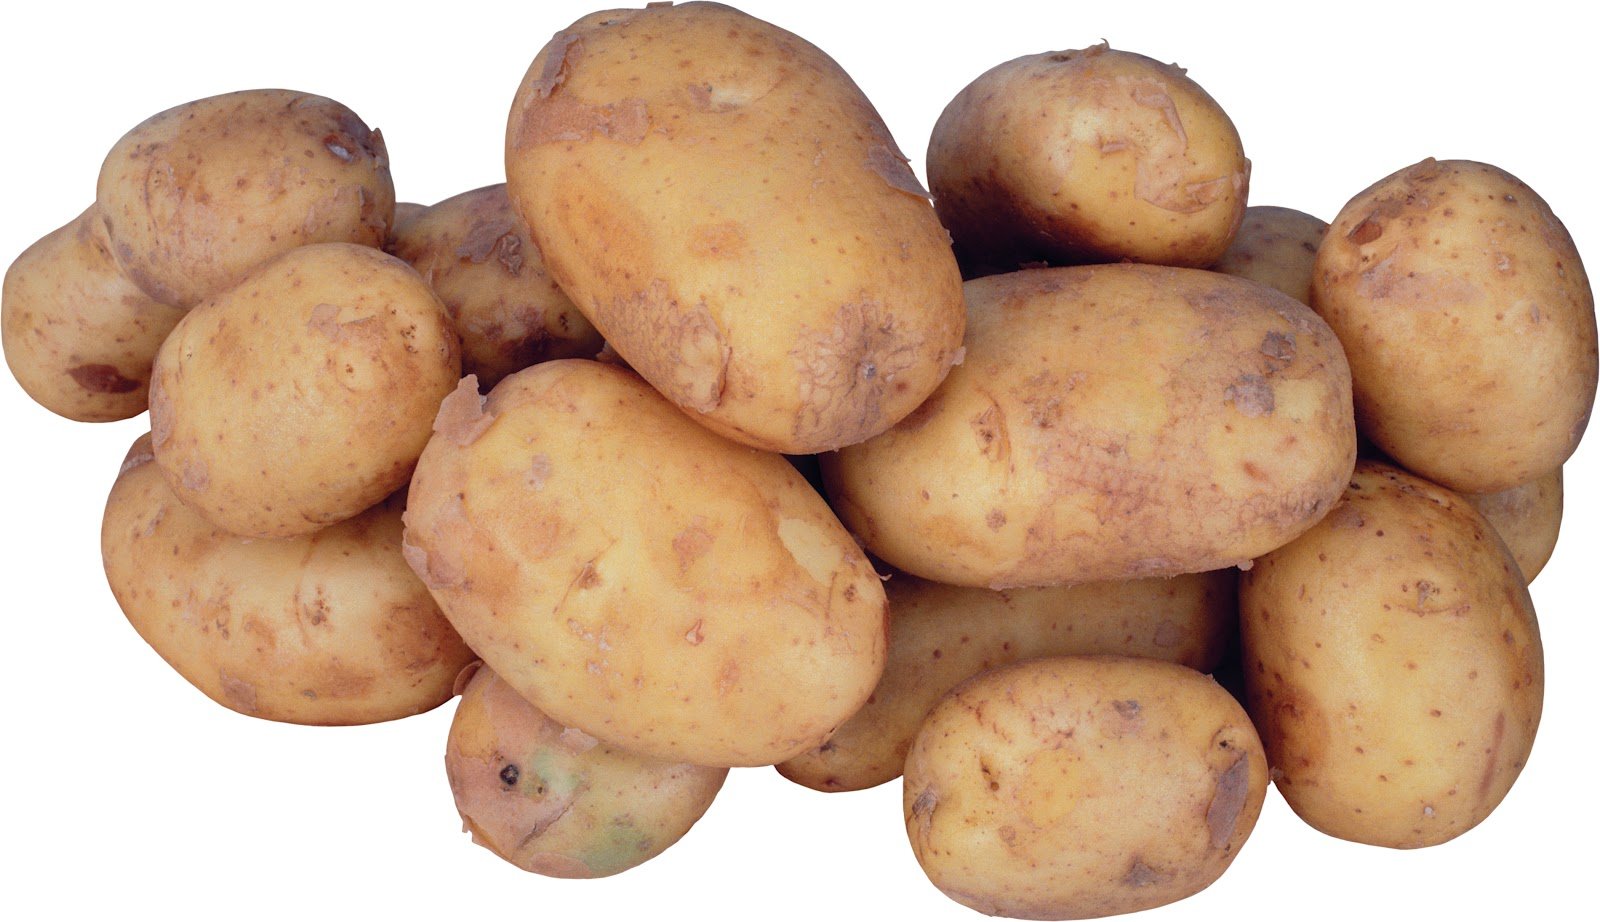 Potatoes picture. Картофель. Картофель на белом фоне. Картофель без фона. Картофель для детей.